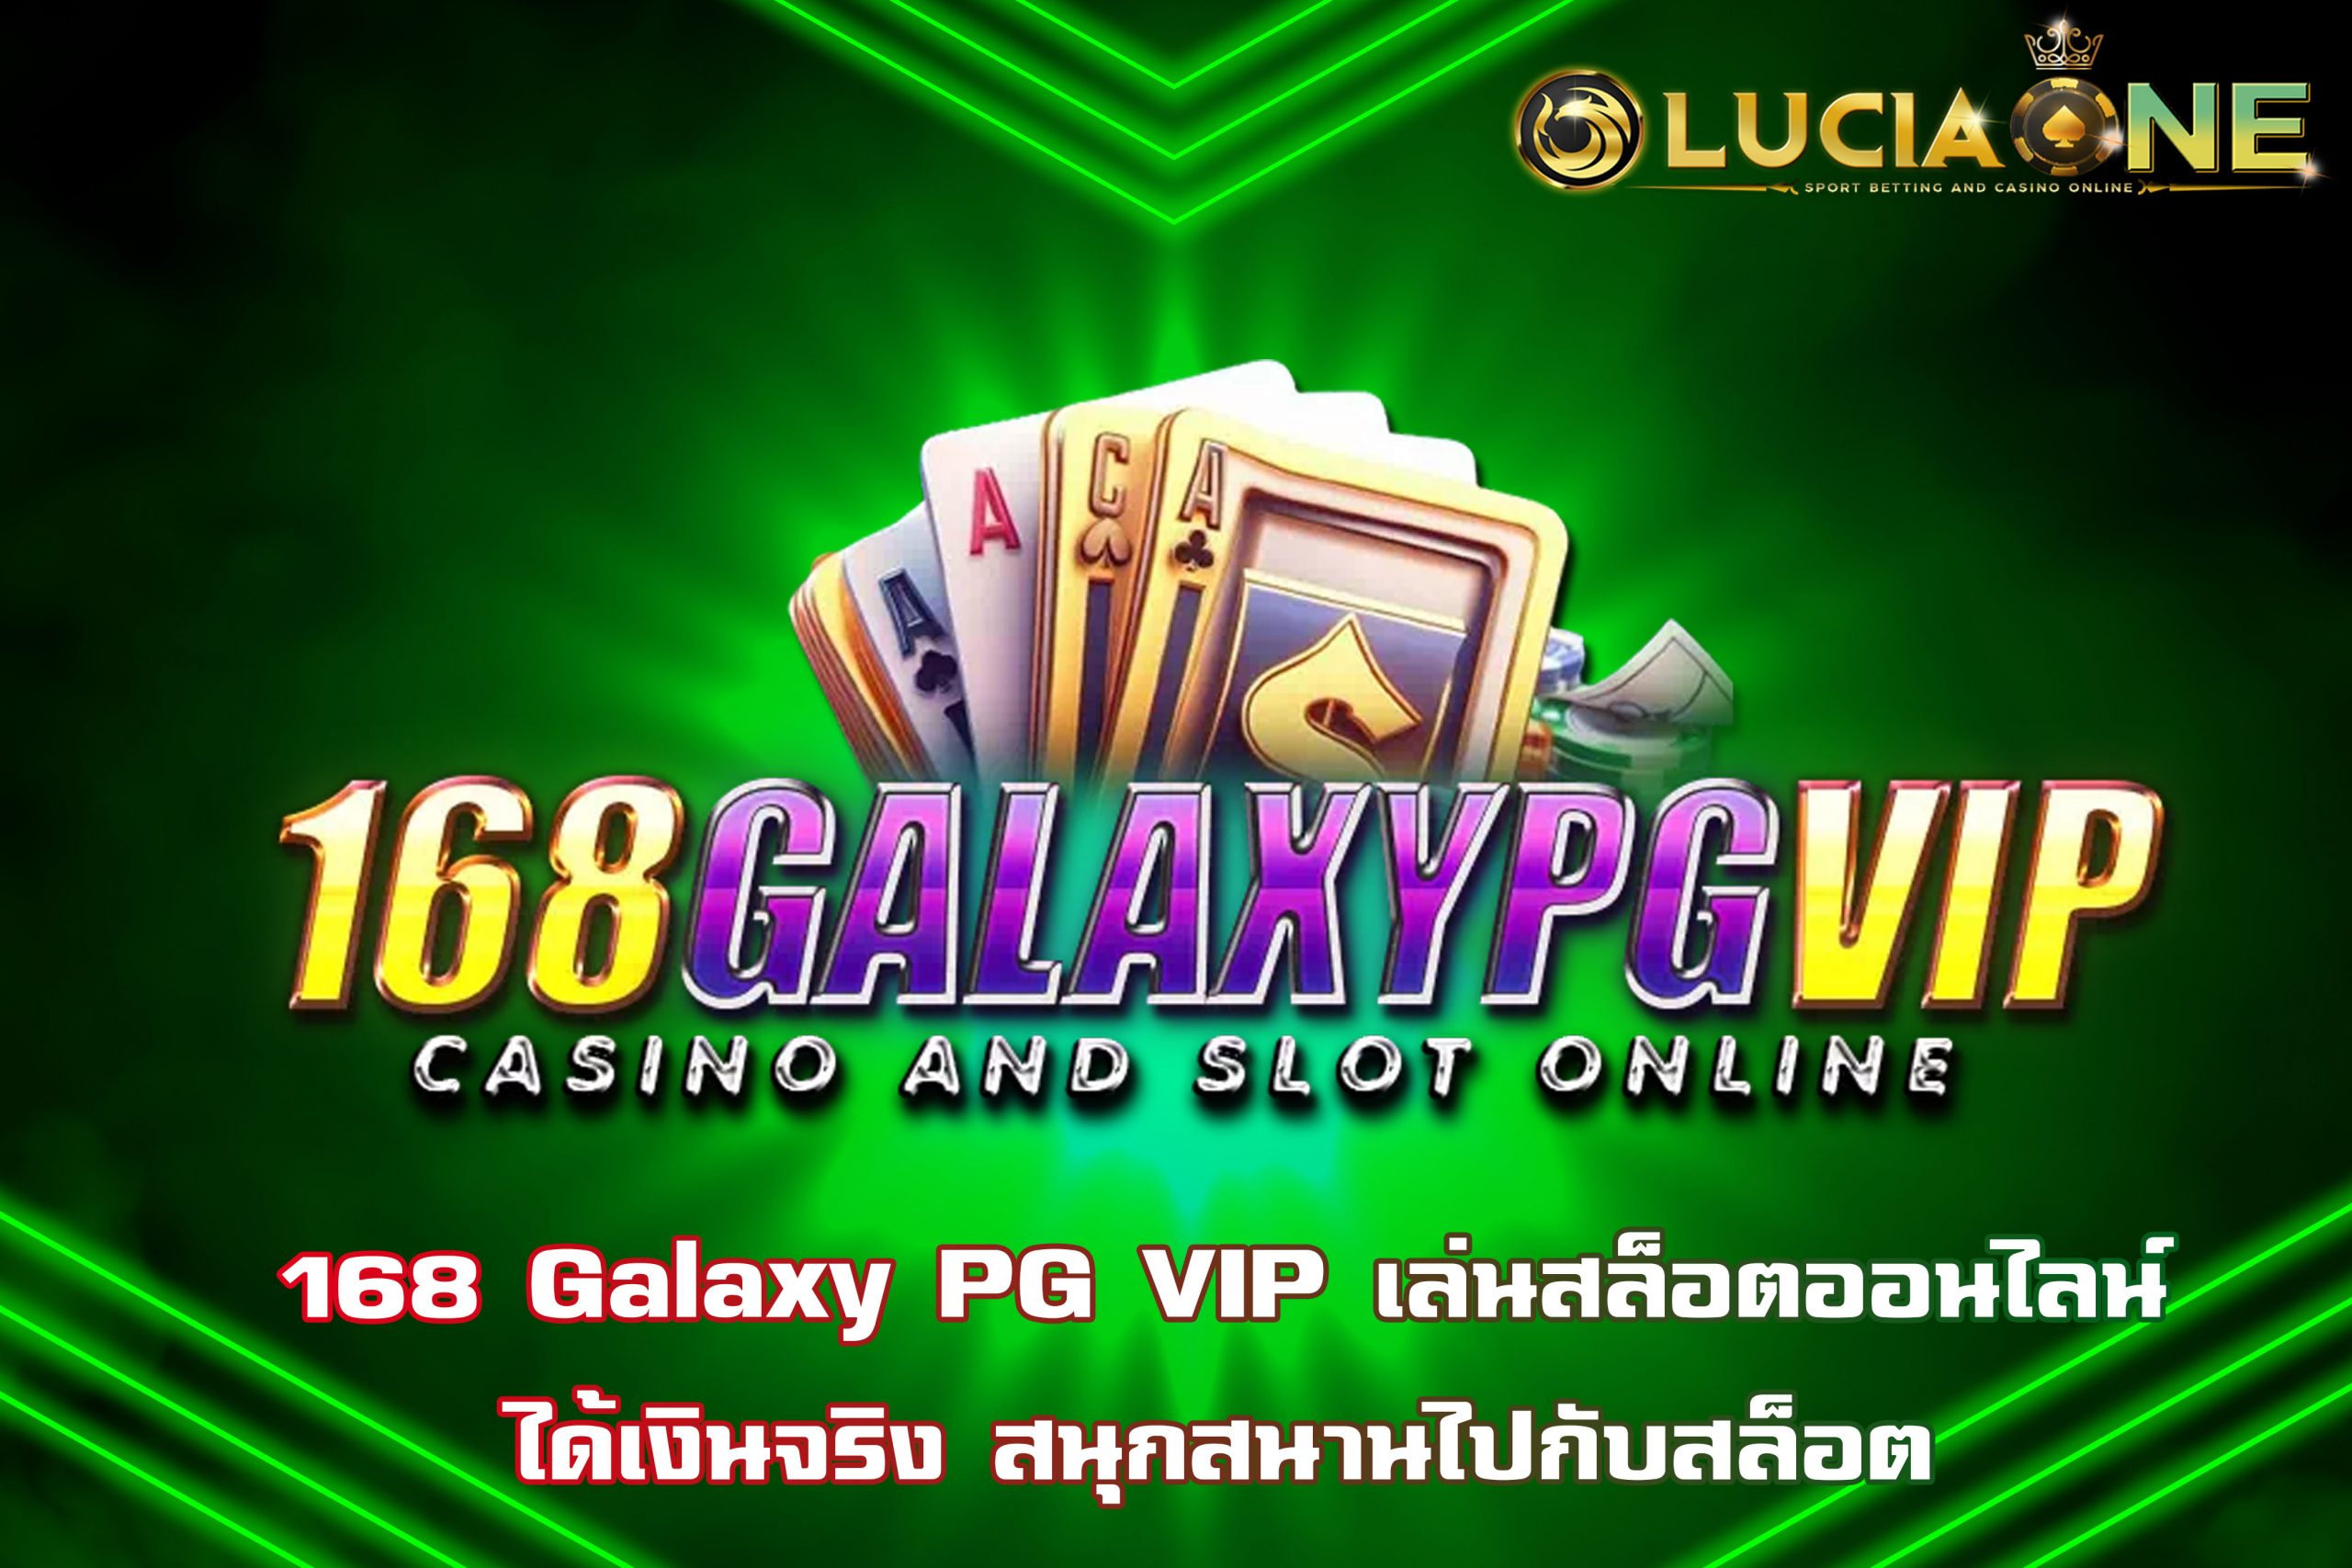 168 Galaxy PG VIP เล่นสล็อตออนไลน์ได้เงินจริง สนุกสนานไปกับสล็อต